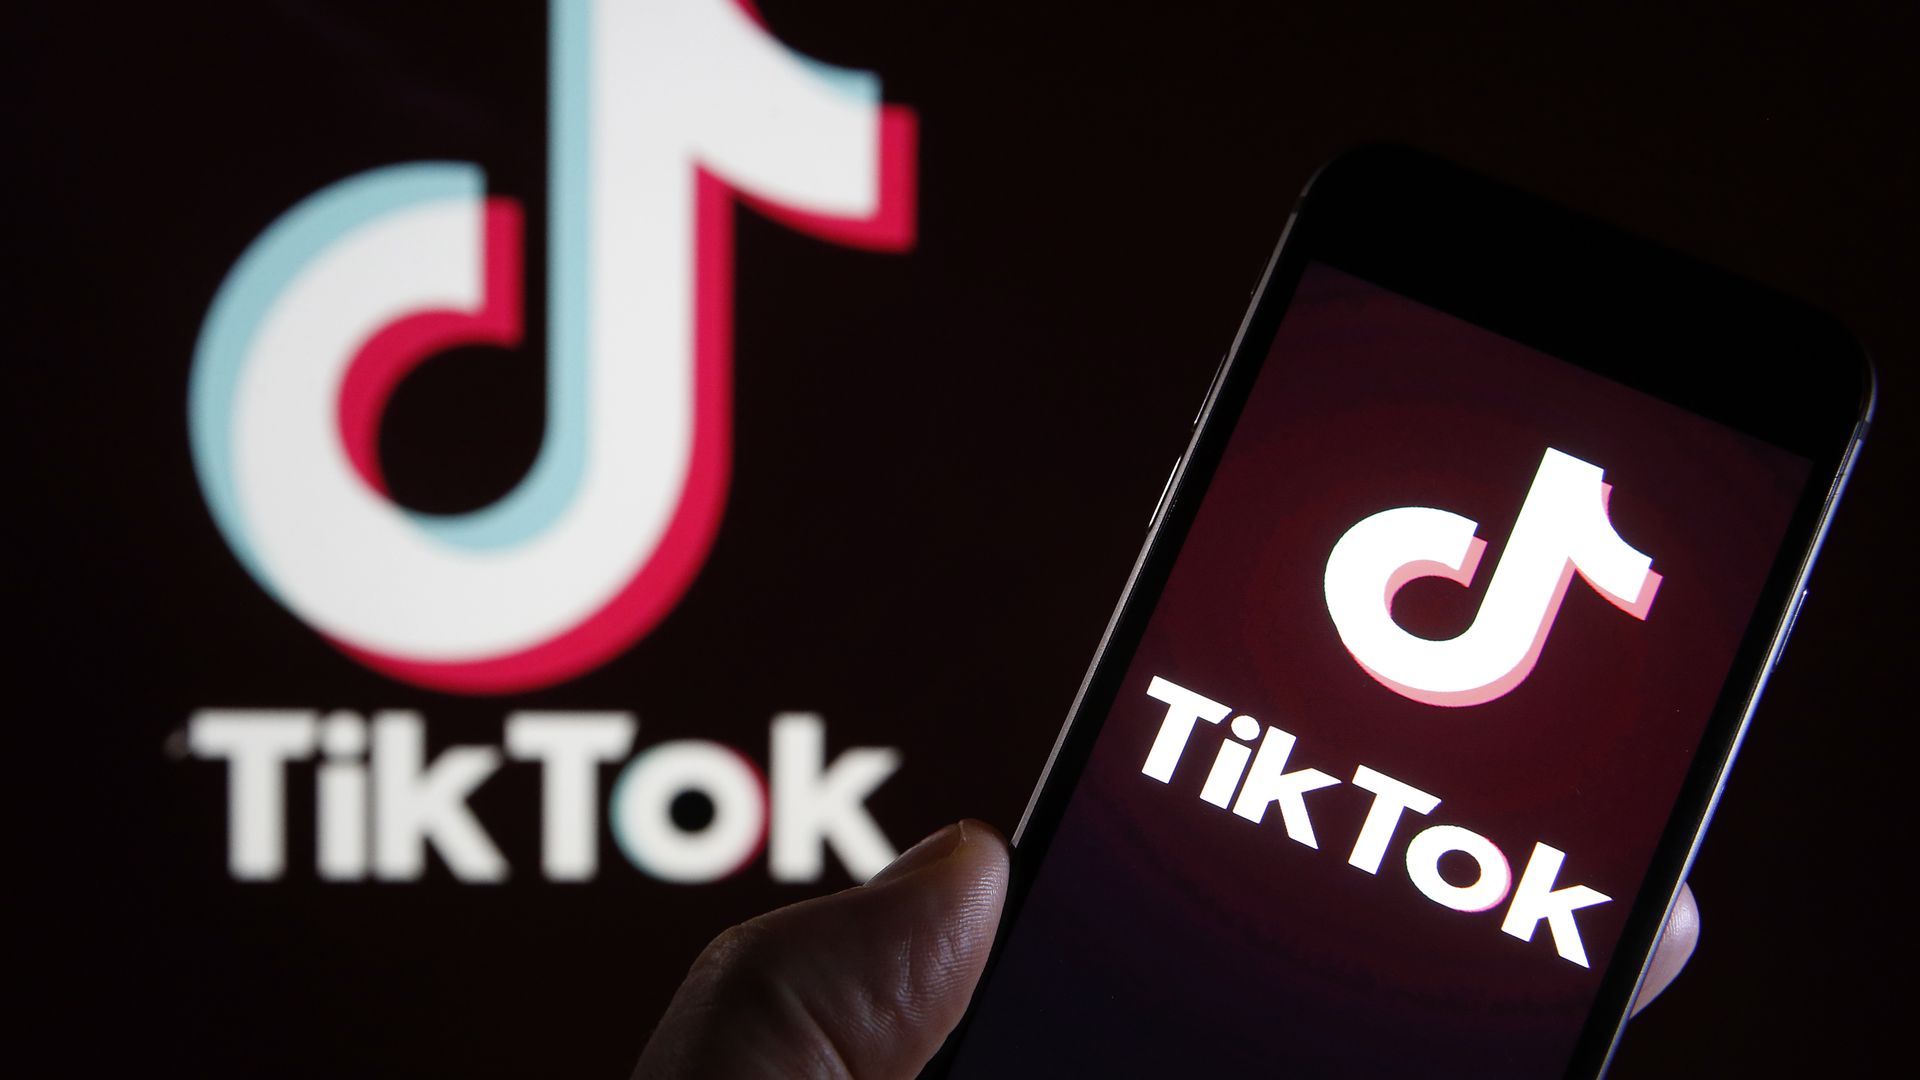 The TikTok app